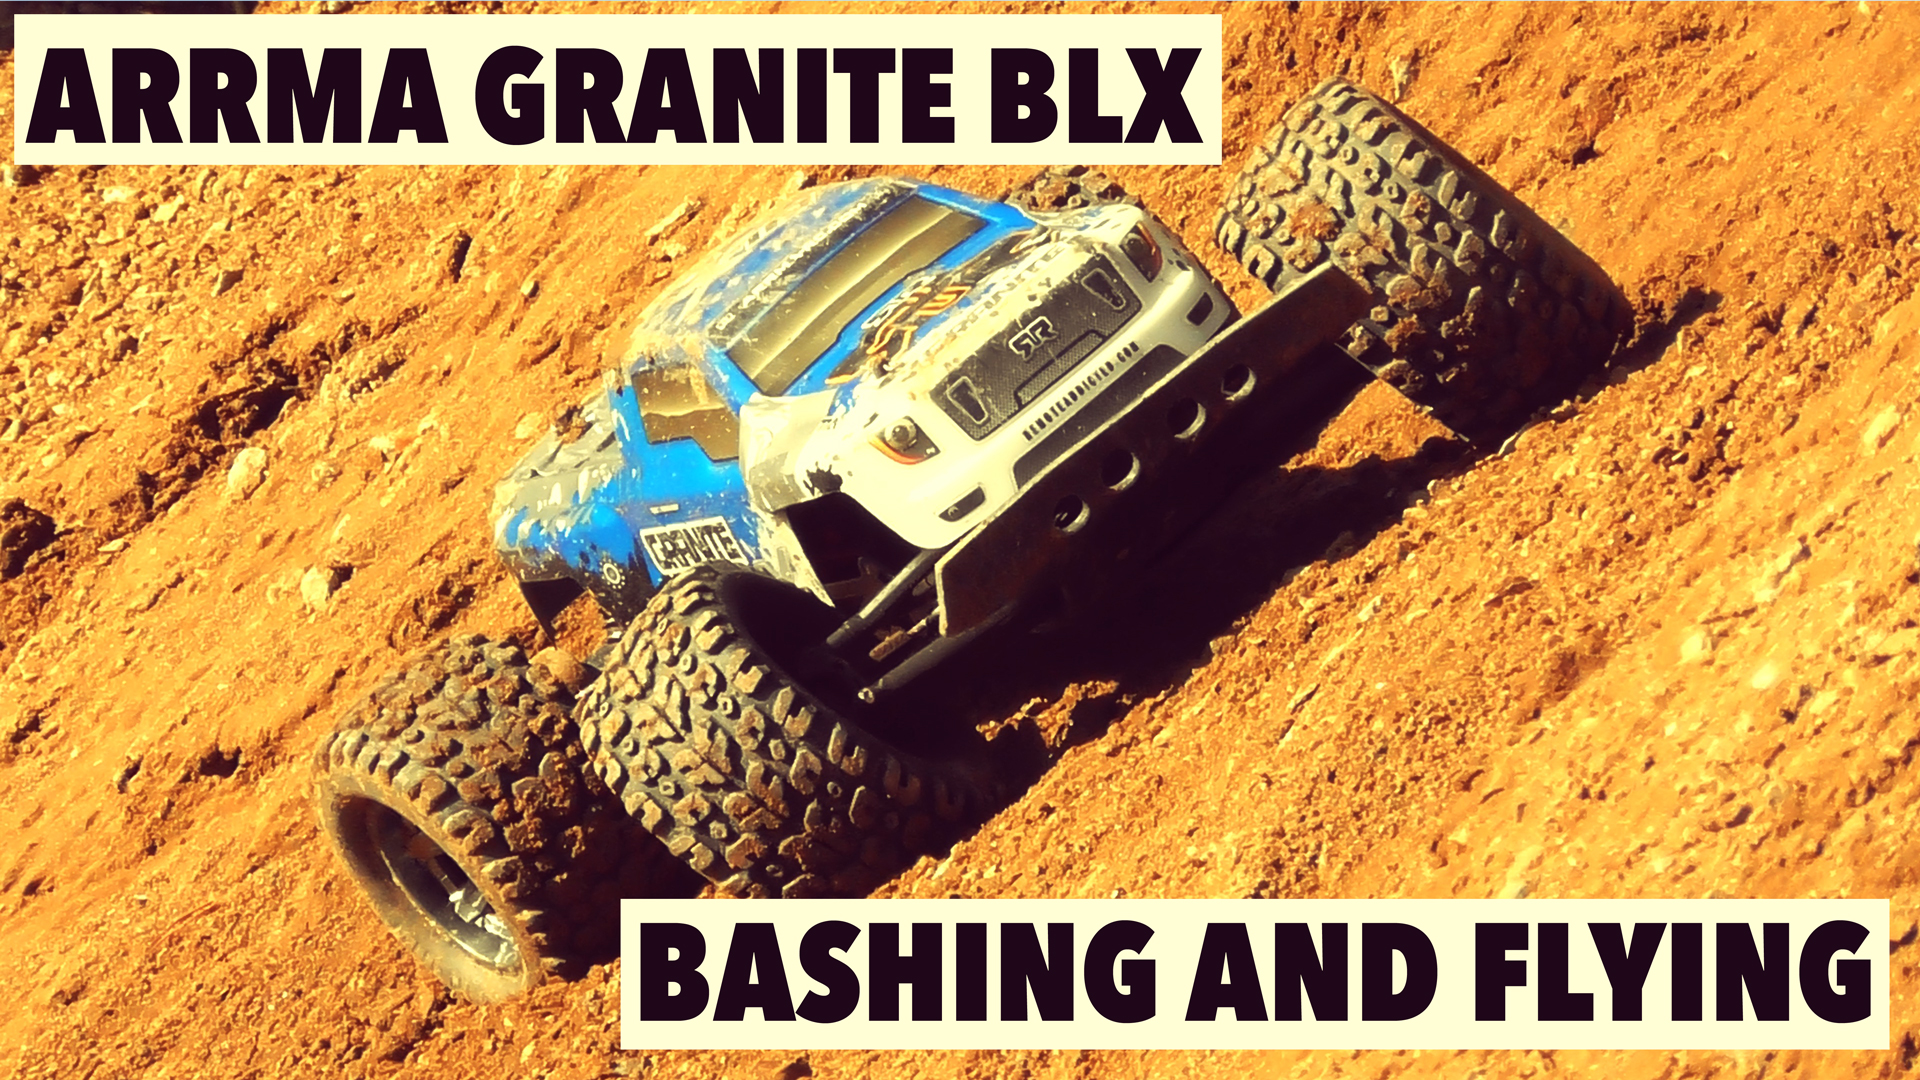 Arrma Granite BLX